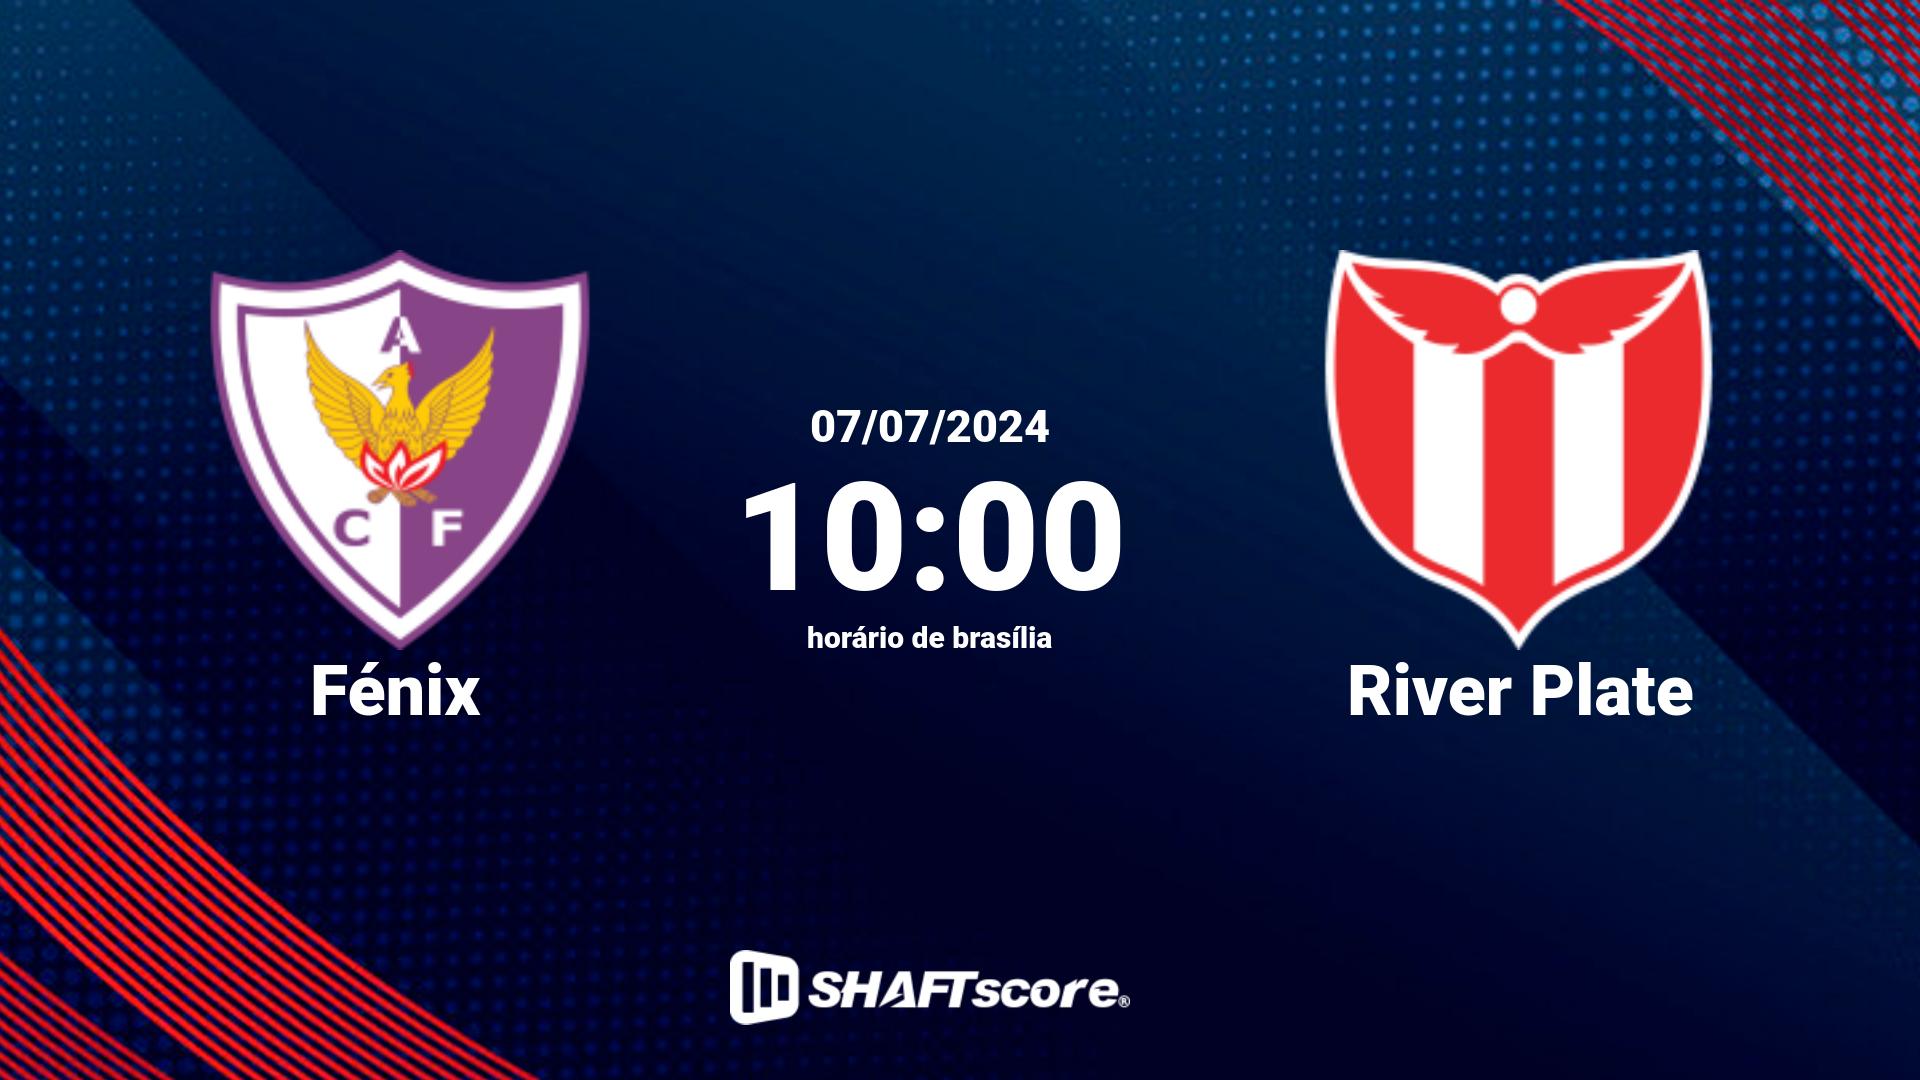 Estatísticas do jogo Fénix vs River Plate 07.07 10:00